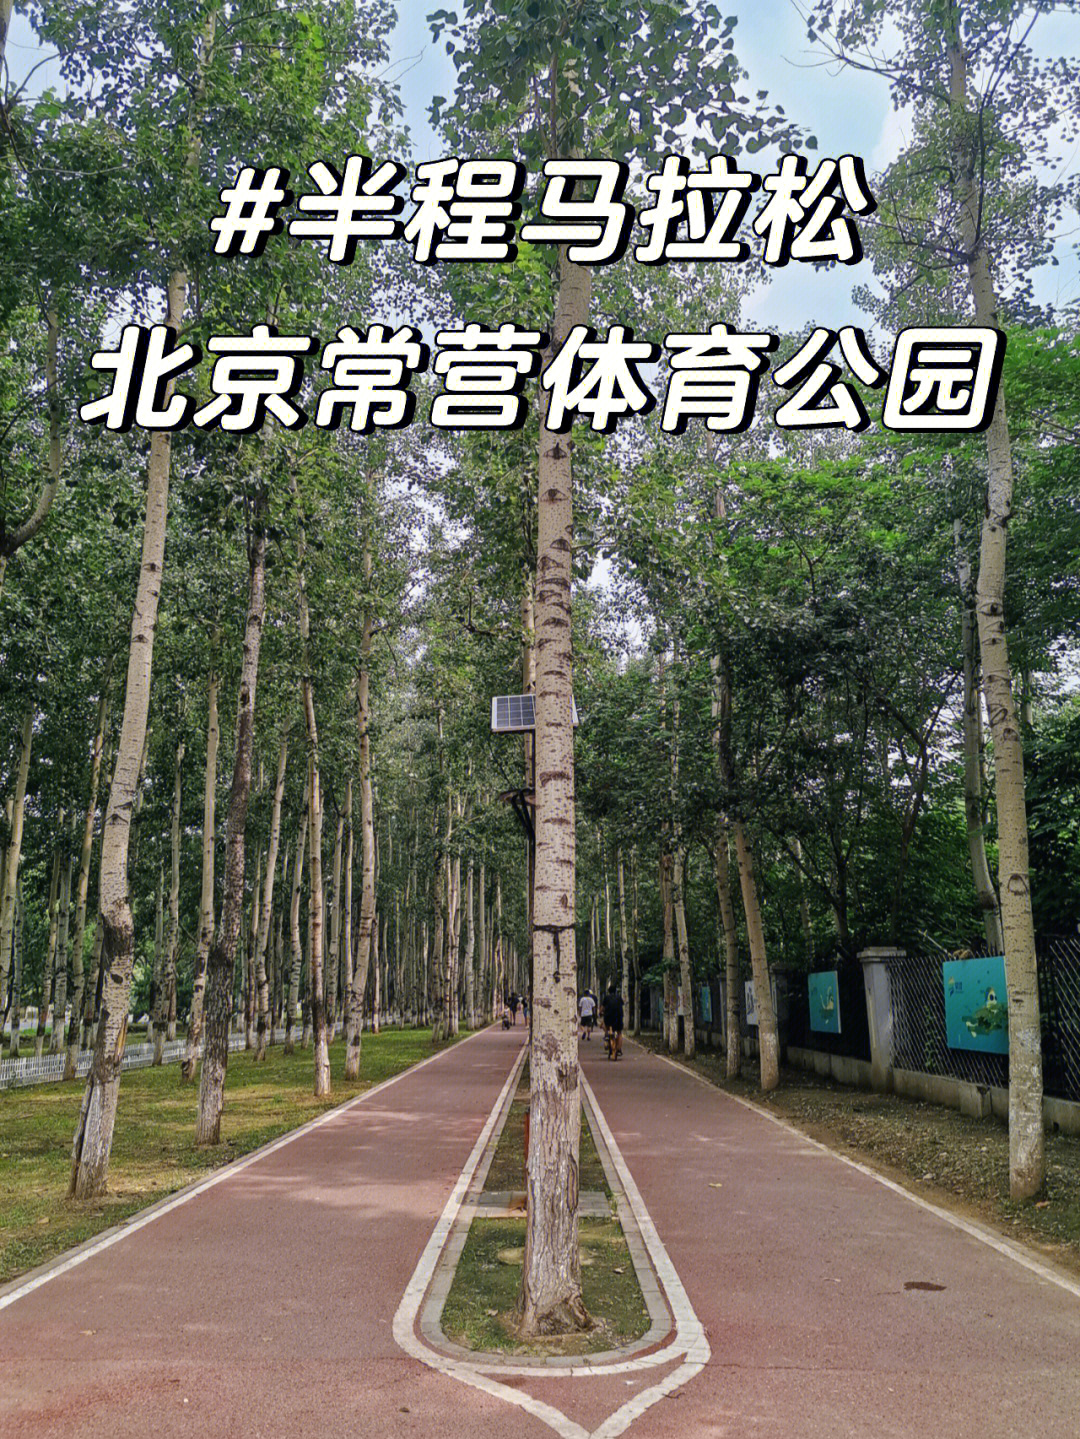 北京常营马拉松体育公园夏天跑步不晒